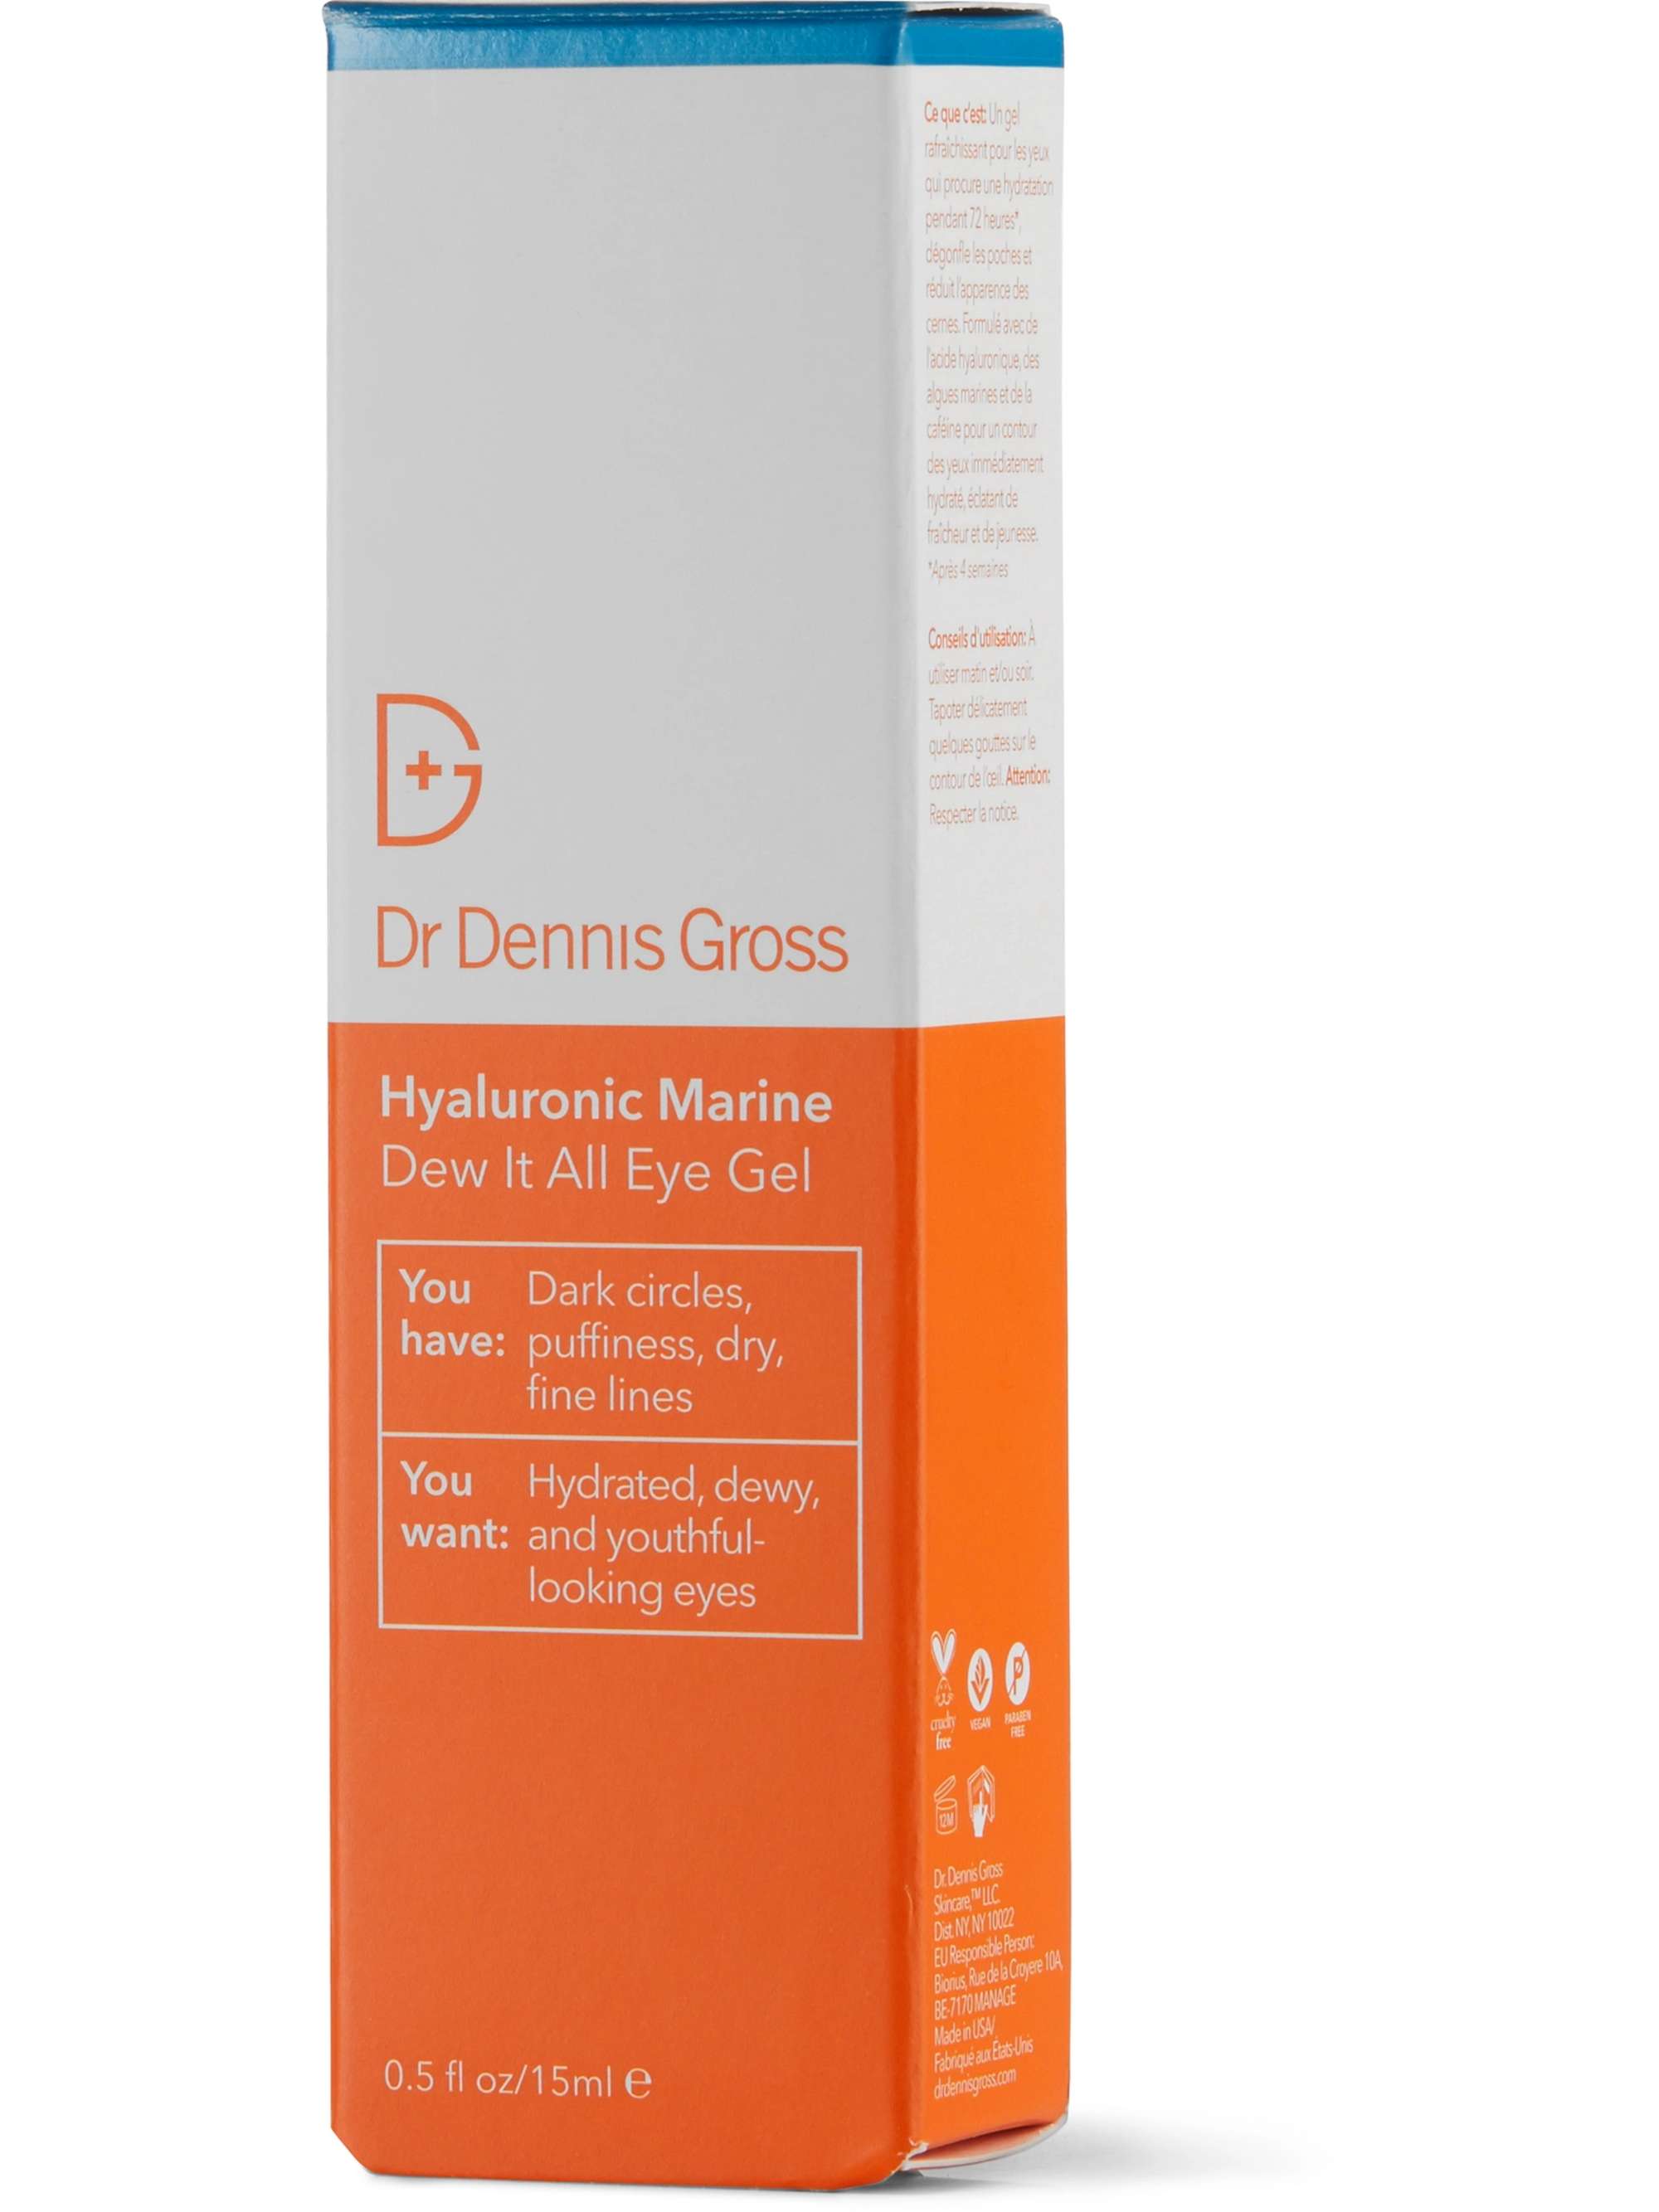 DR. DENNIS GROSS SKINCARE Hyaluronic Marine Dew It All Eye Gel, 15ml